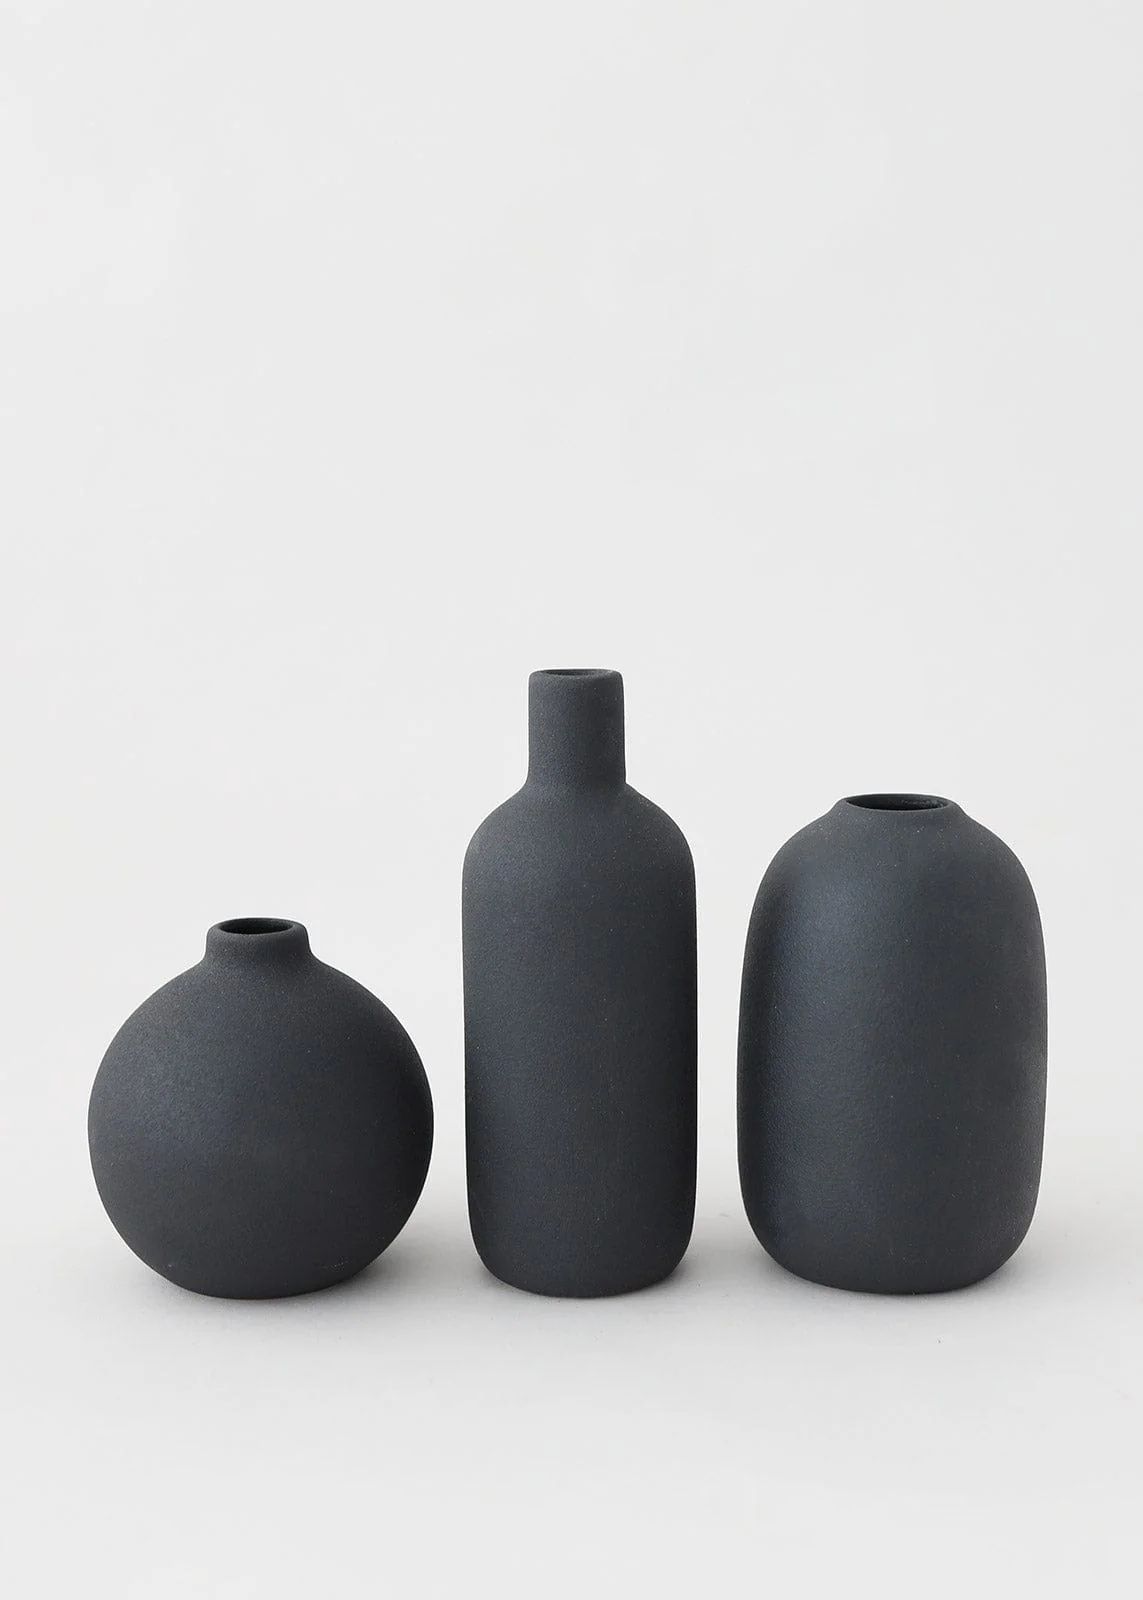 Afloral Set of 3 Black Ceramic Bud Vases - 4.25-7" | Afloral